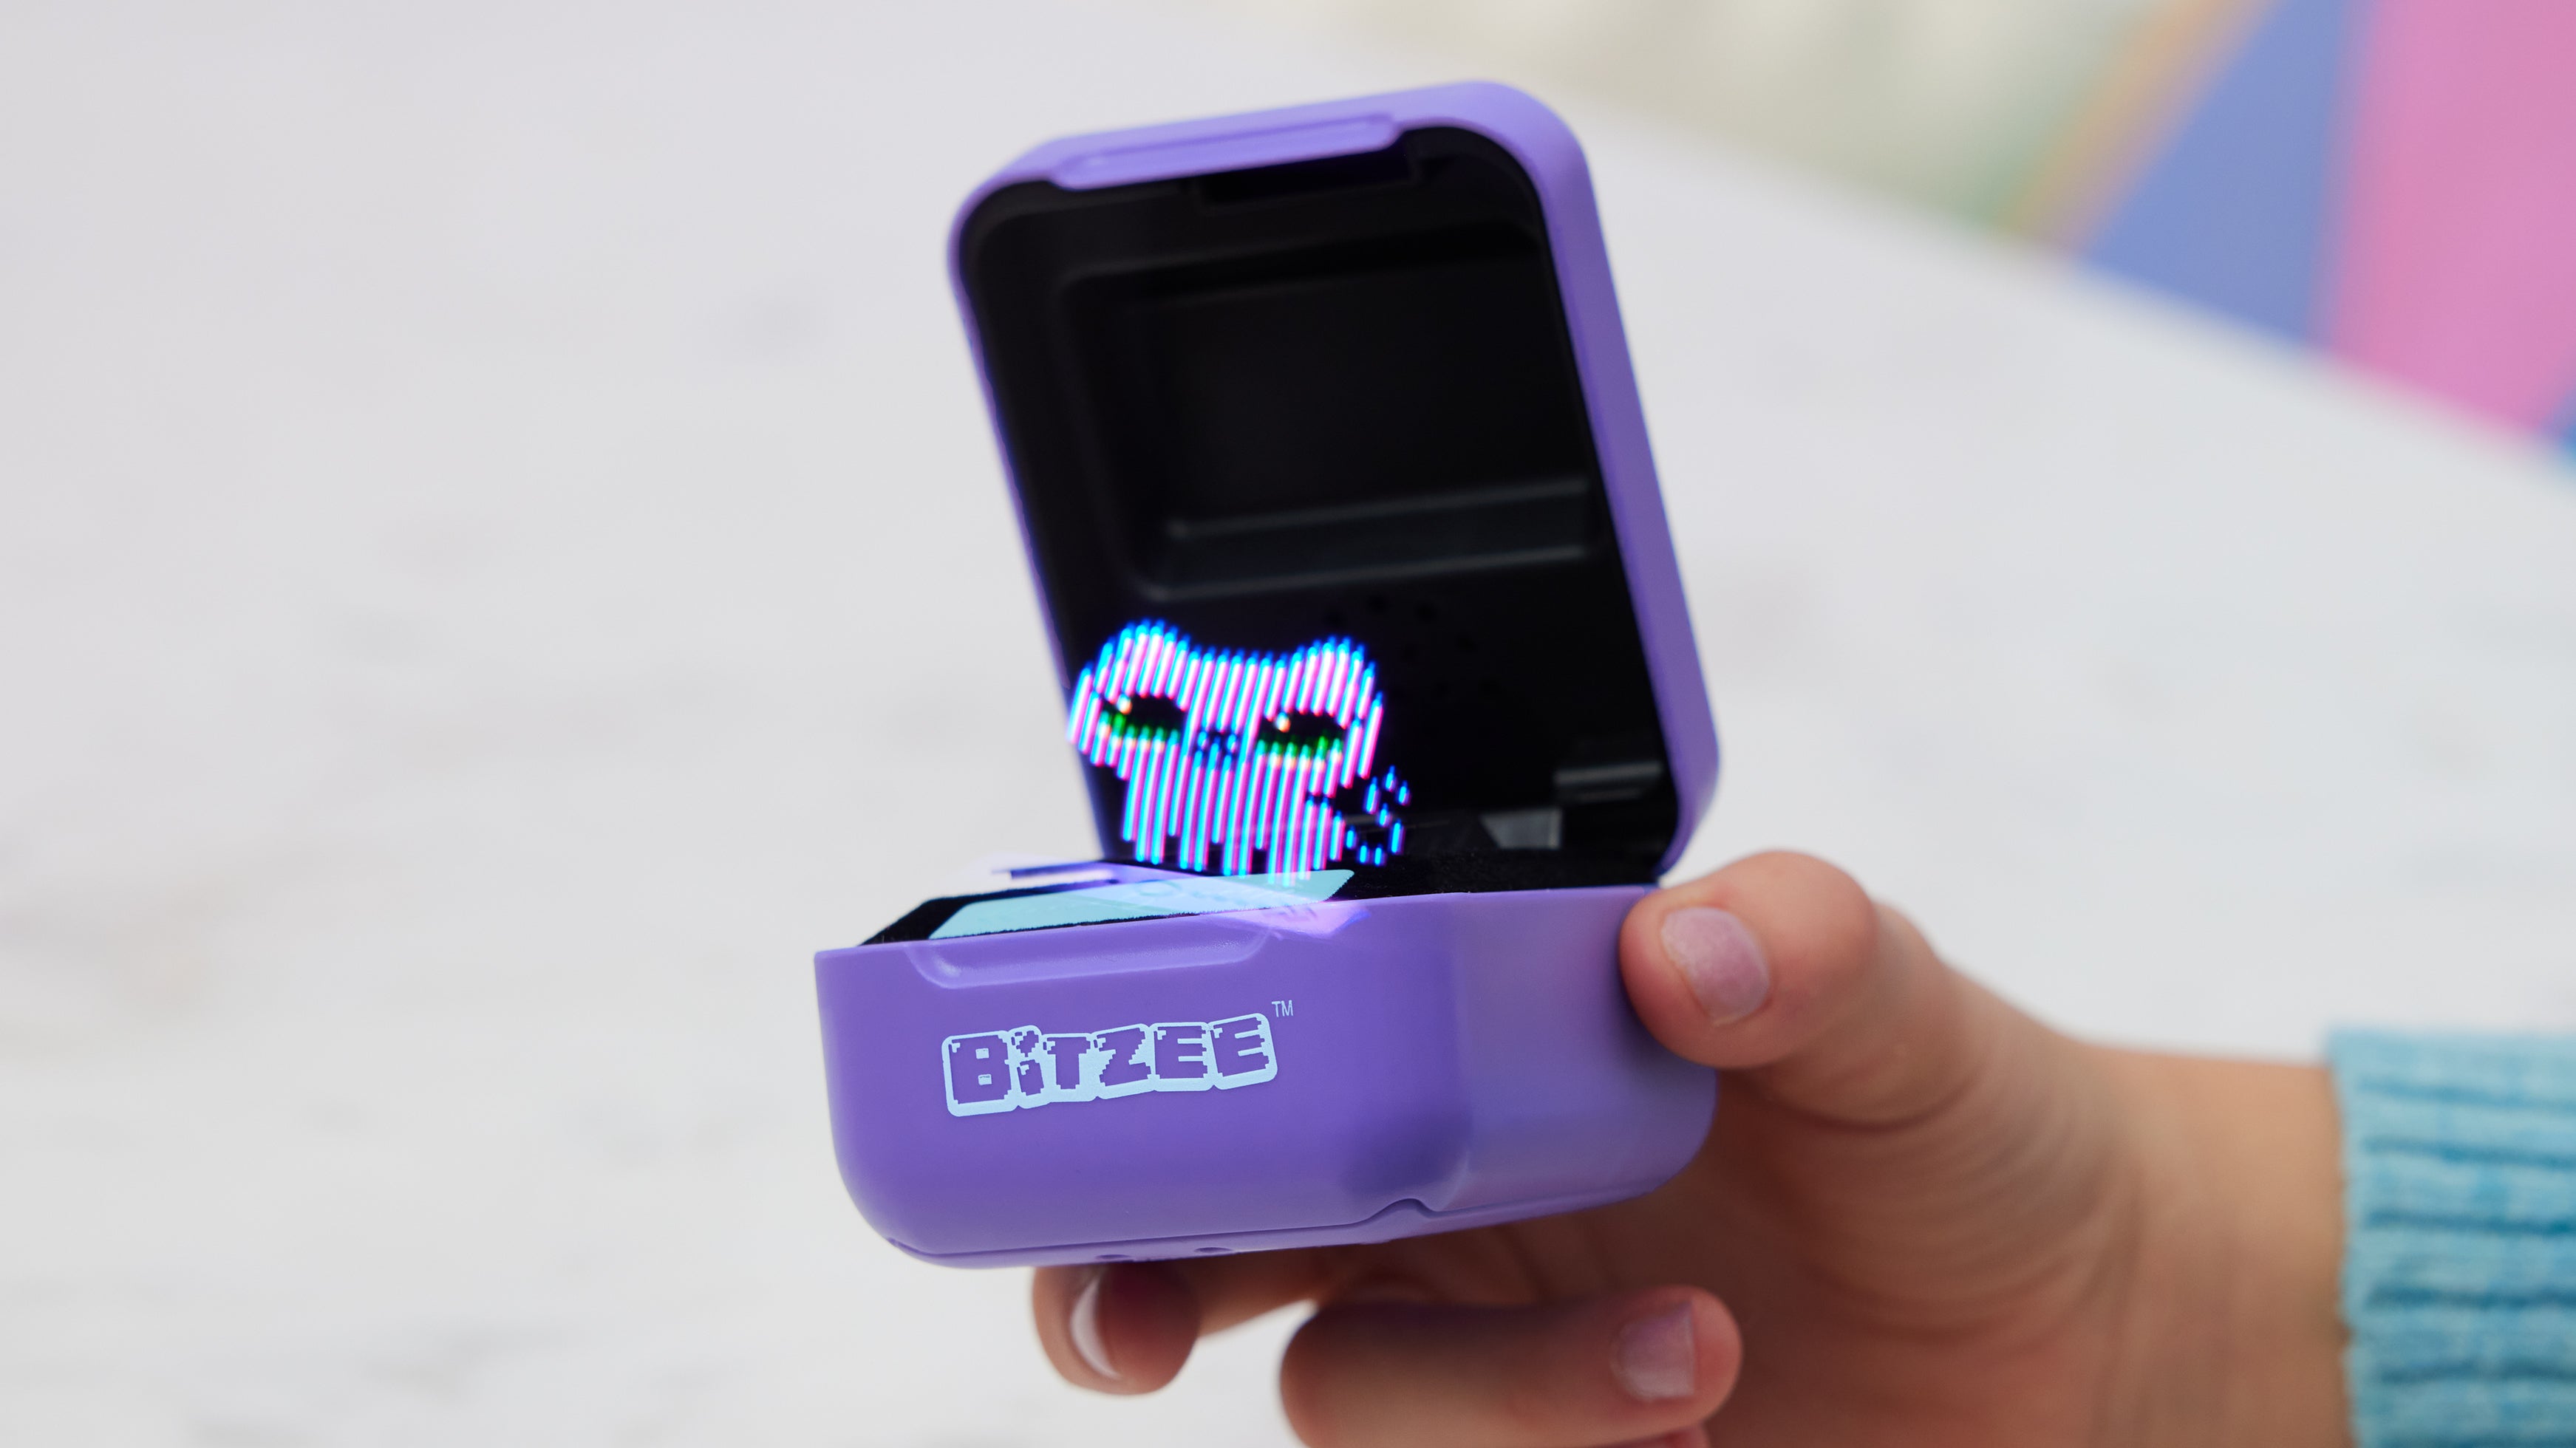 مستخدم يحمل حيوانًا أليفًا رقميًا من Bitzee وغطاءه مفتوحًا وقطة أرجوانية على الشاشة.